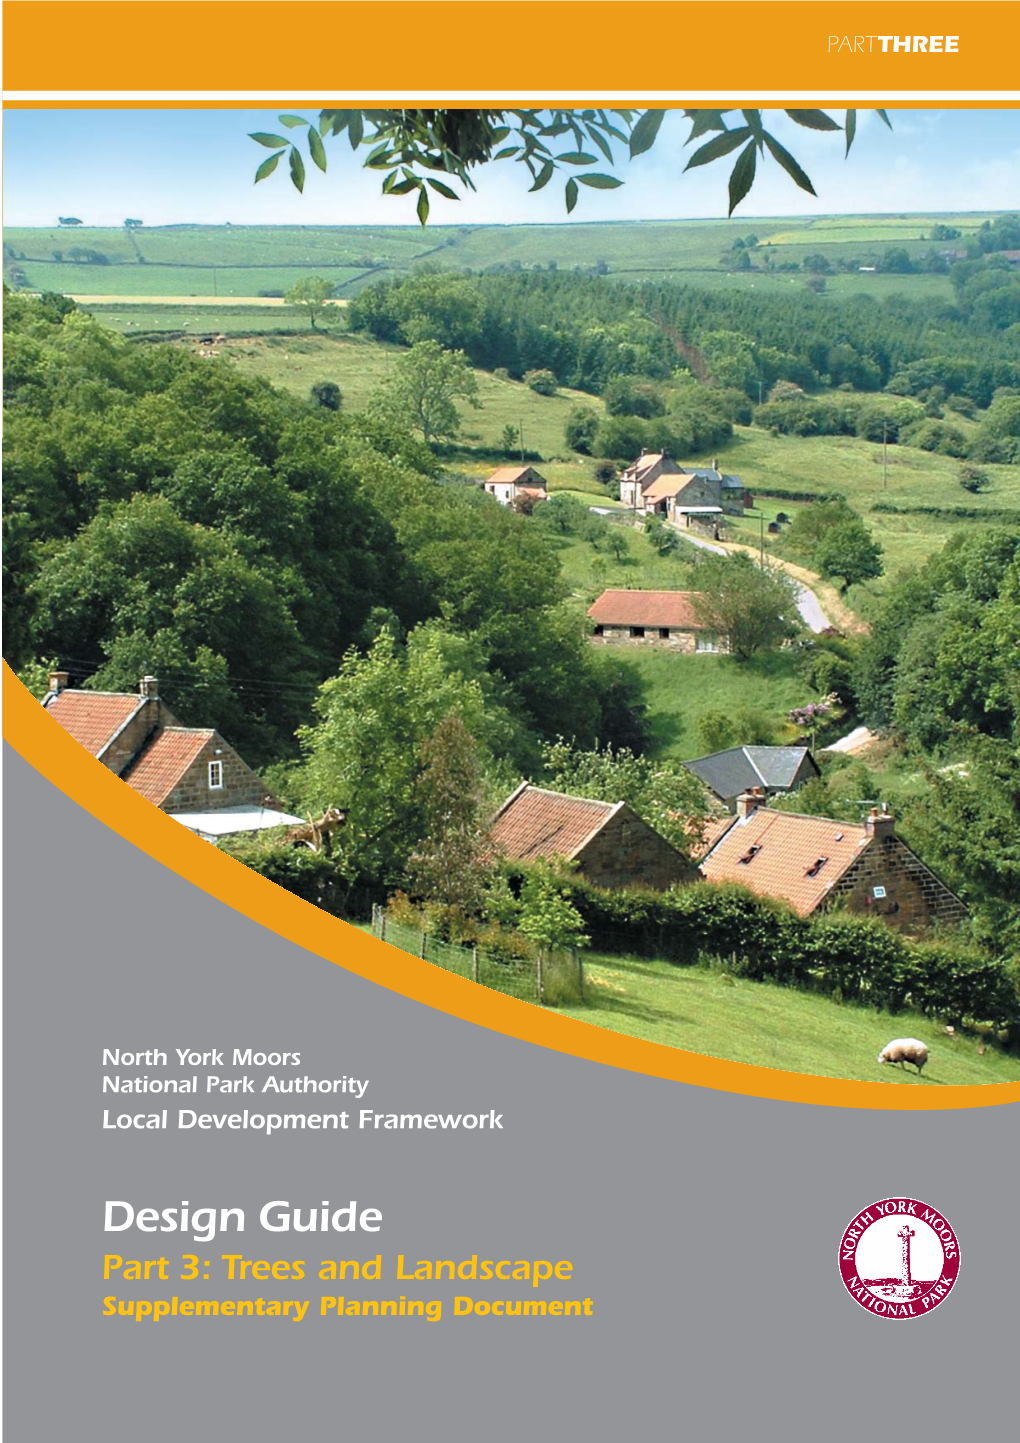 Design Guide 3 Cover 12/22/09 8:32 PM Page 1